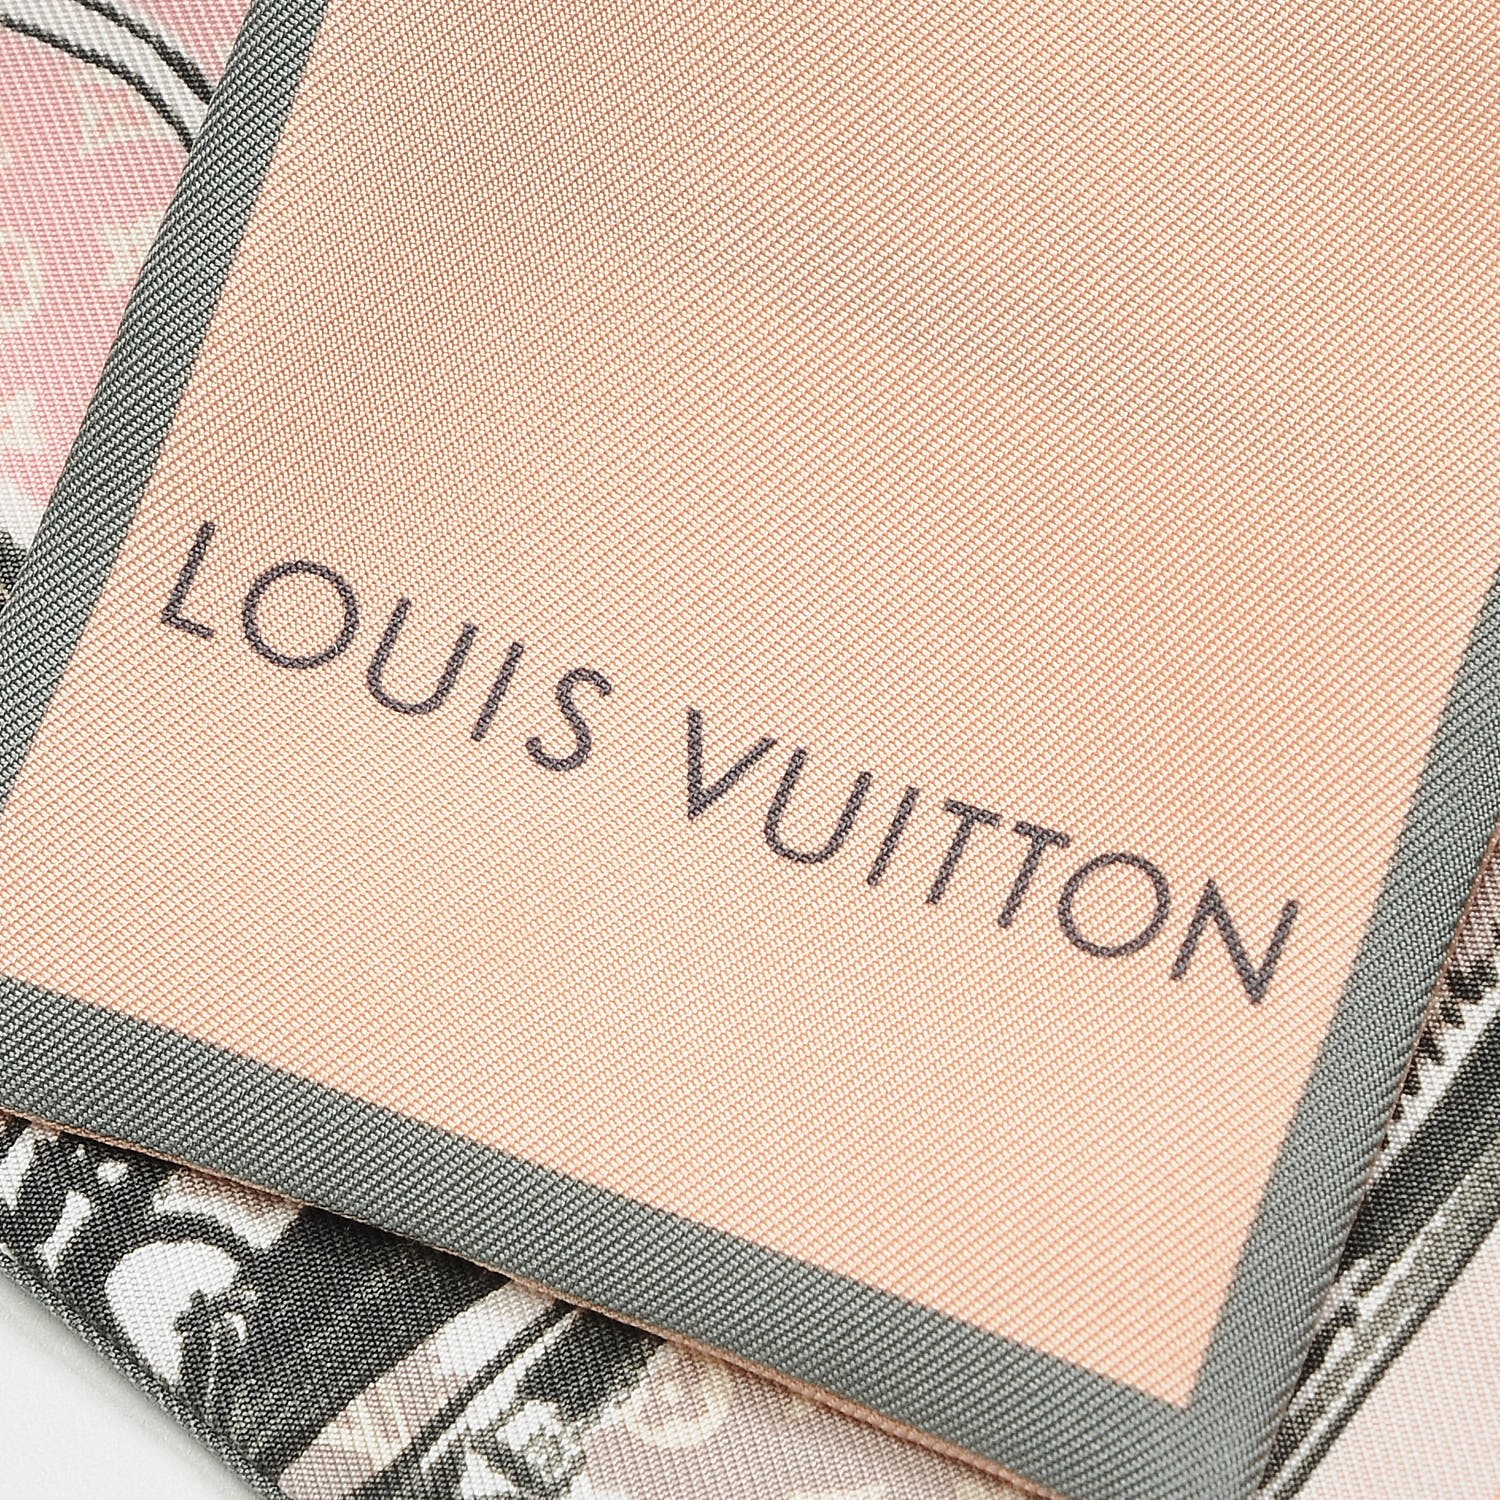 100% Authentic Louis Vuitton Race Speedy Bandeau